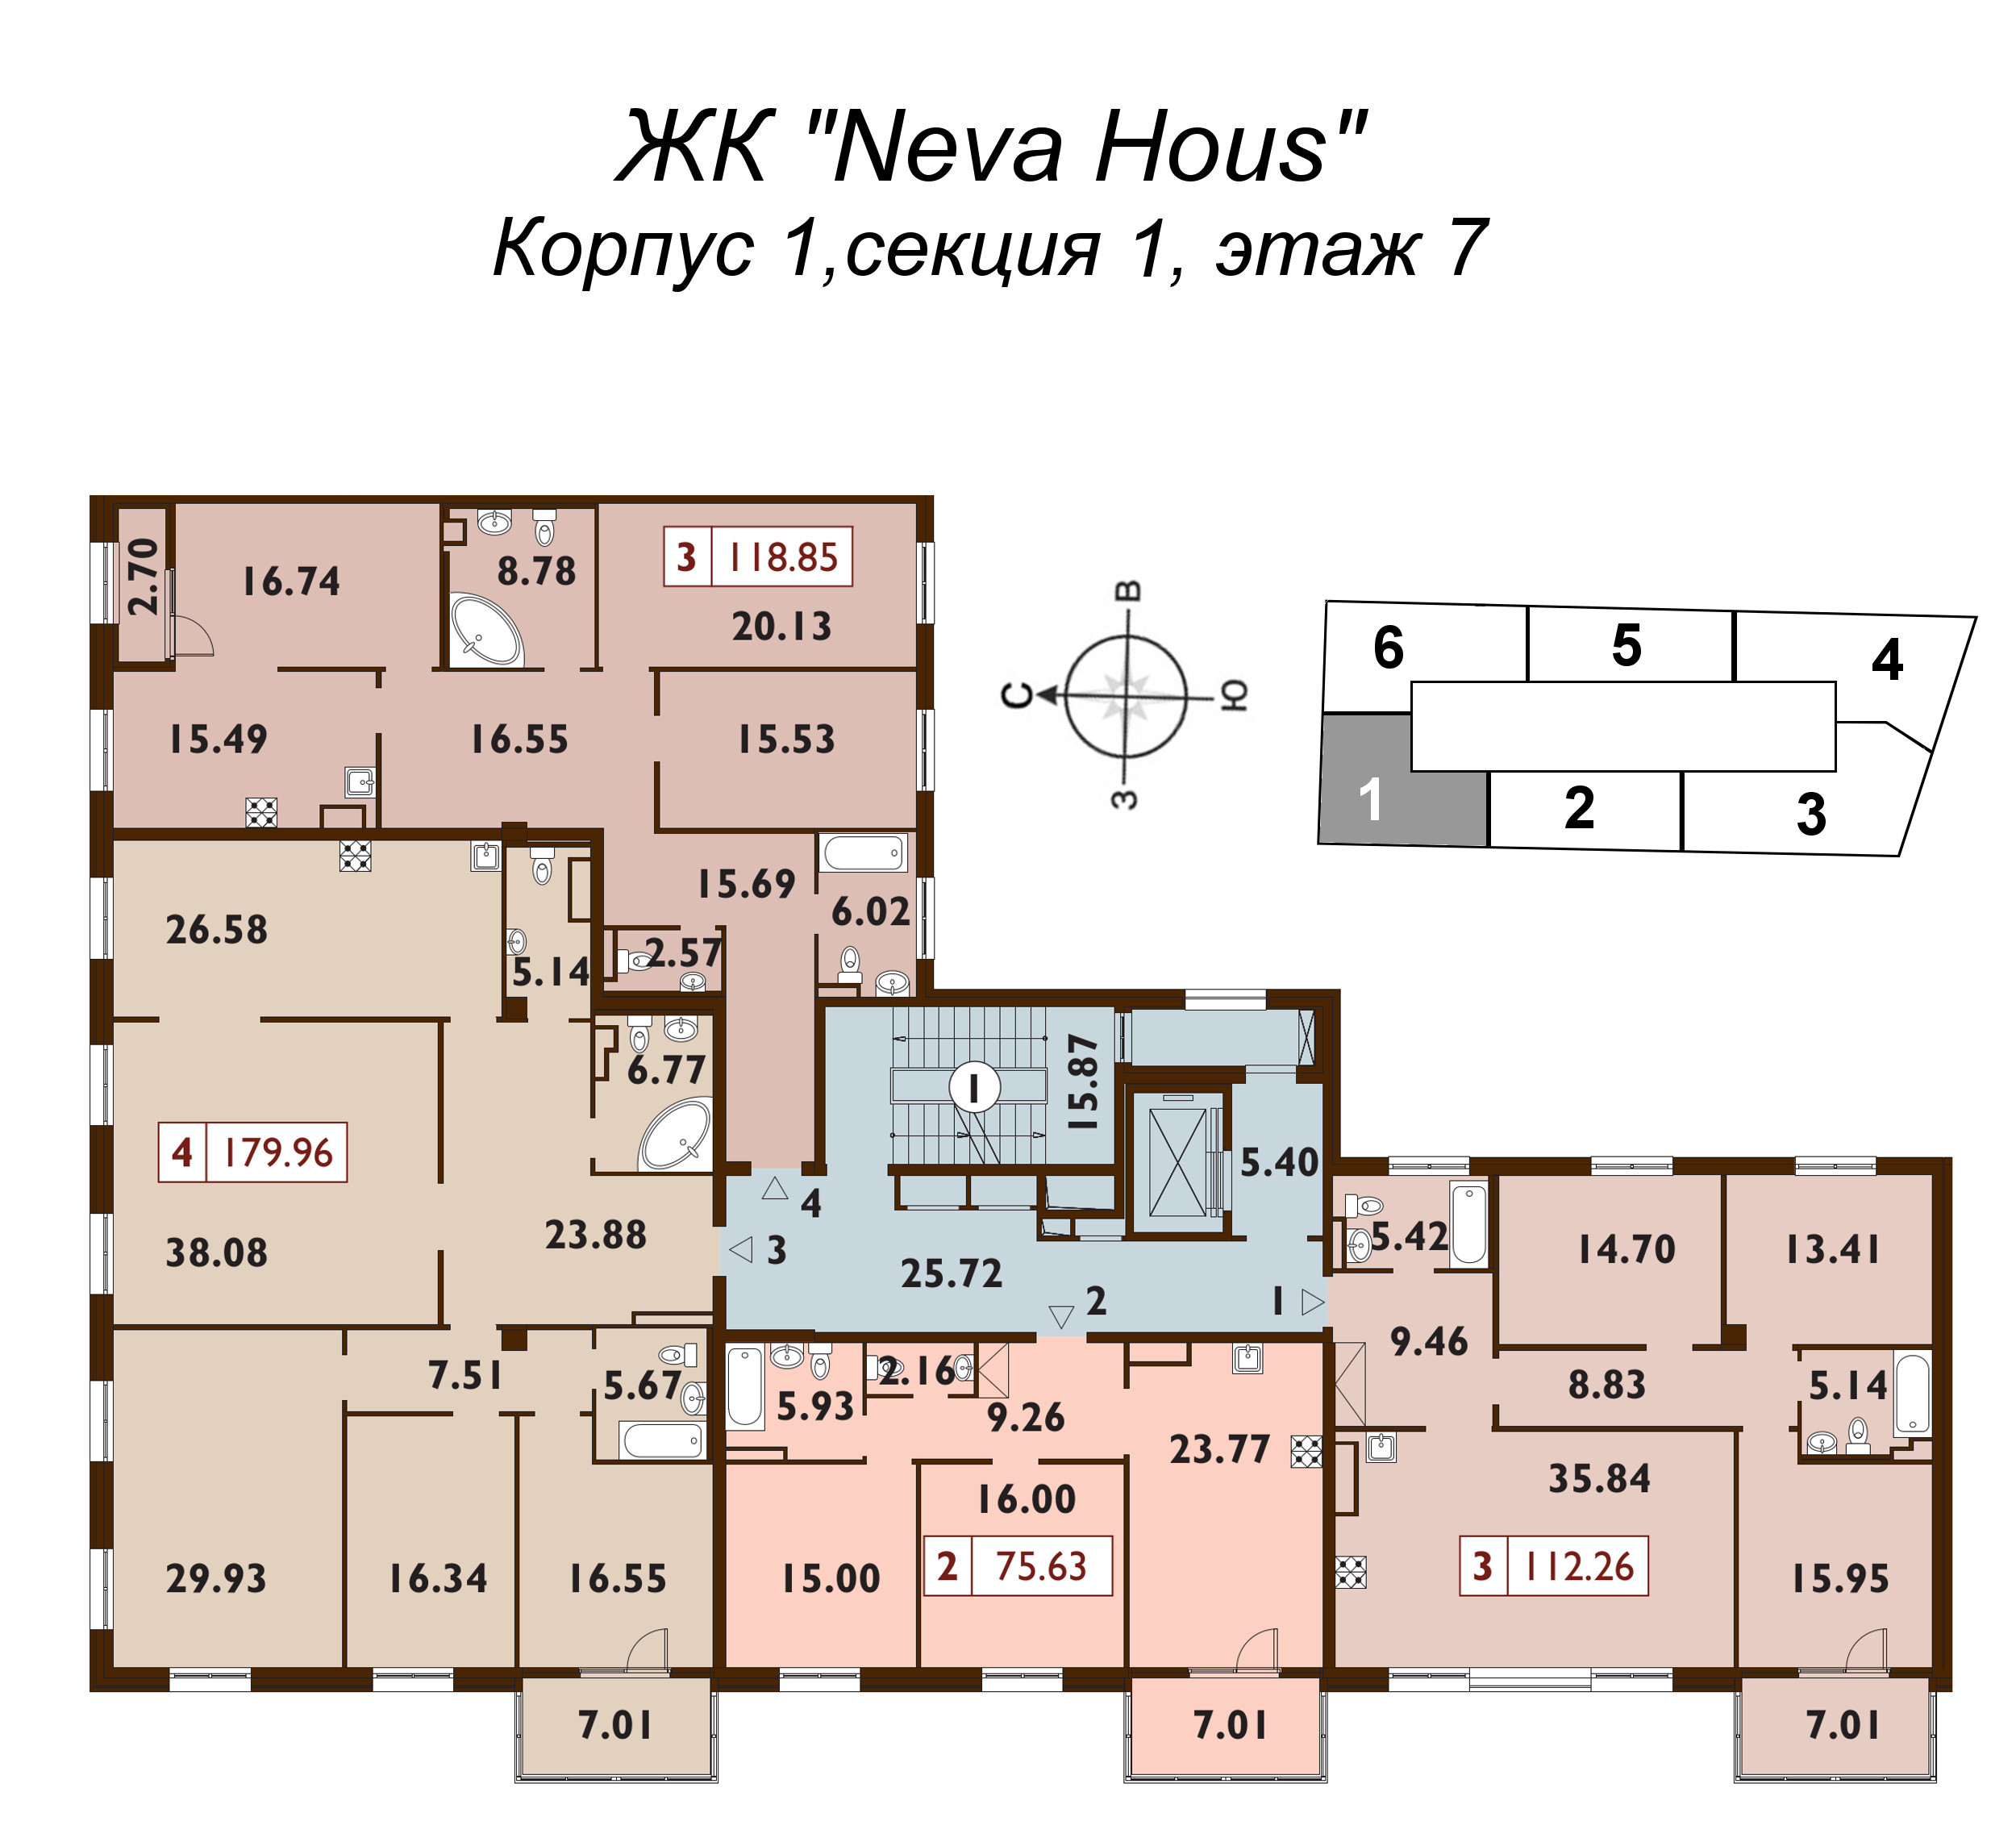 4-комнатная (Евро) квартира, 118.7 м² в ЖК "Neva Haus" - планировка этажа